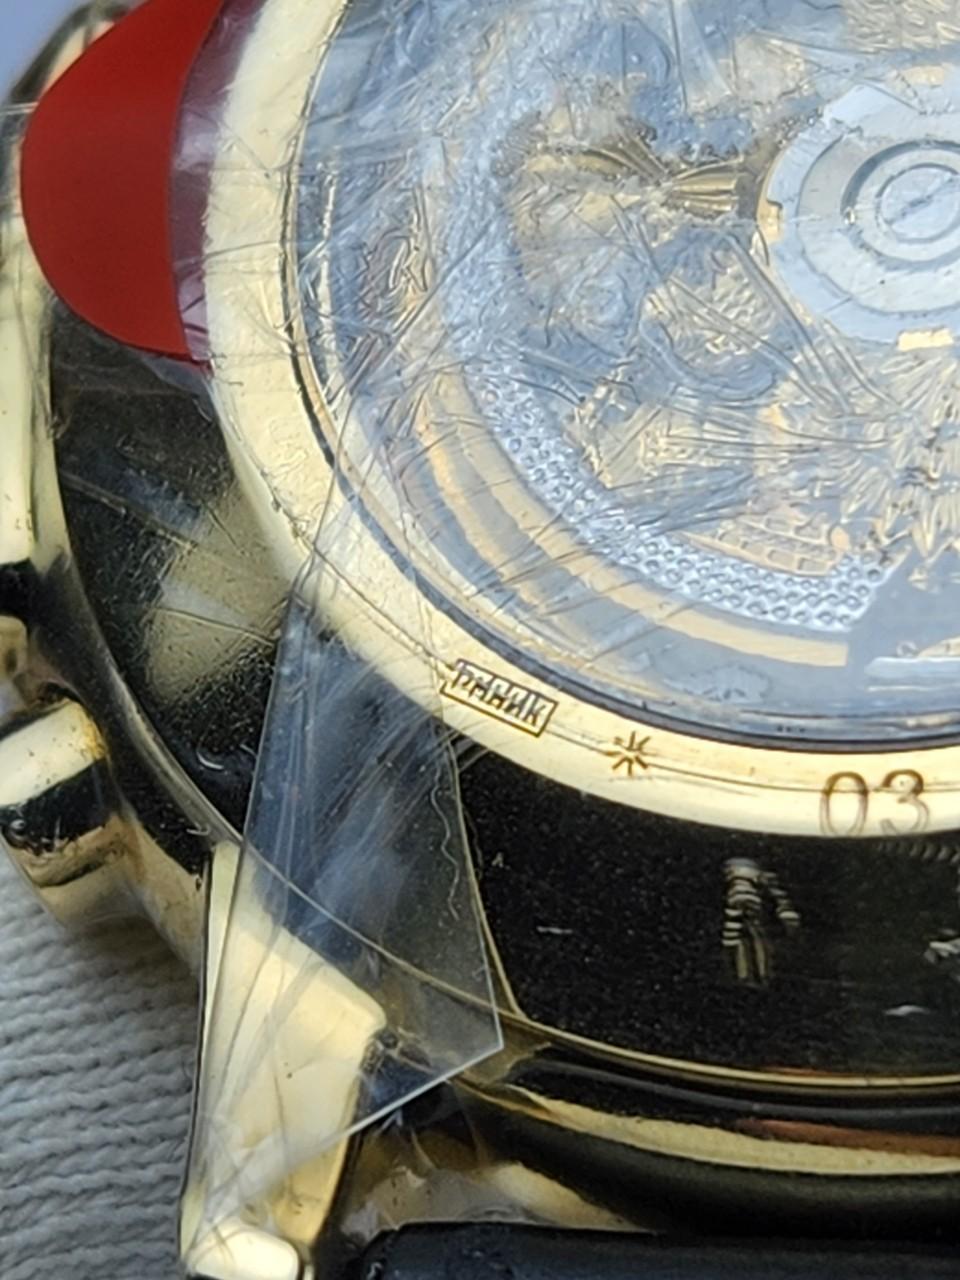 Đồng hồ NIKA vàng đúc nguyên khối 1101.1.4.86: Kết hợp tinh tế giữa công nghệ và sang trọng